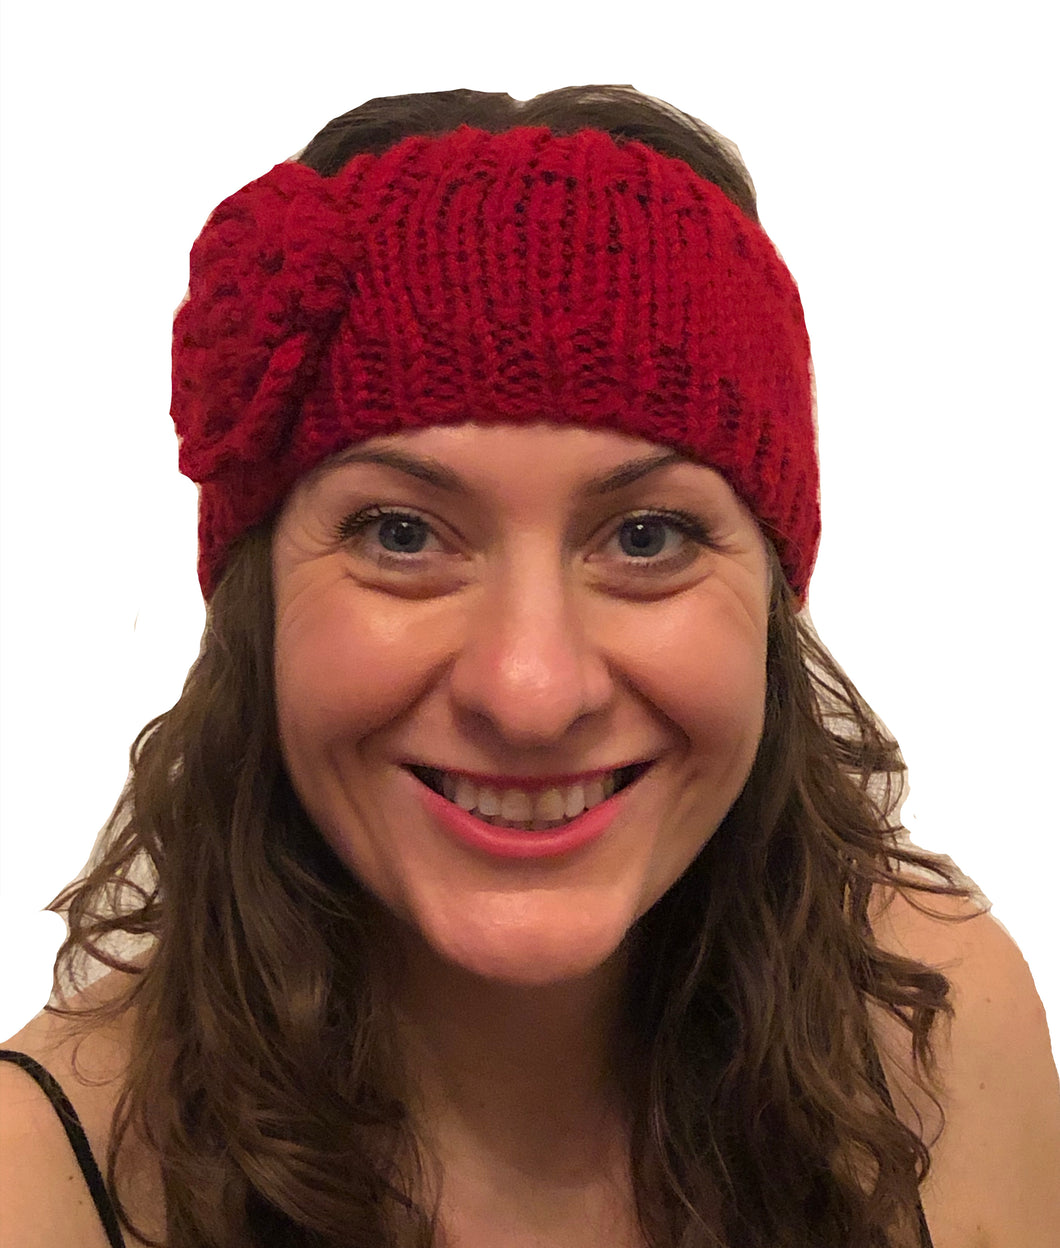 Red woollen machine knitted headband with flower. Warm winter headband